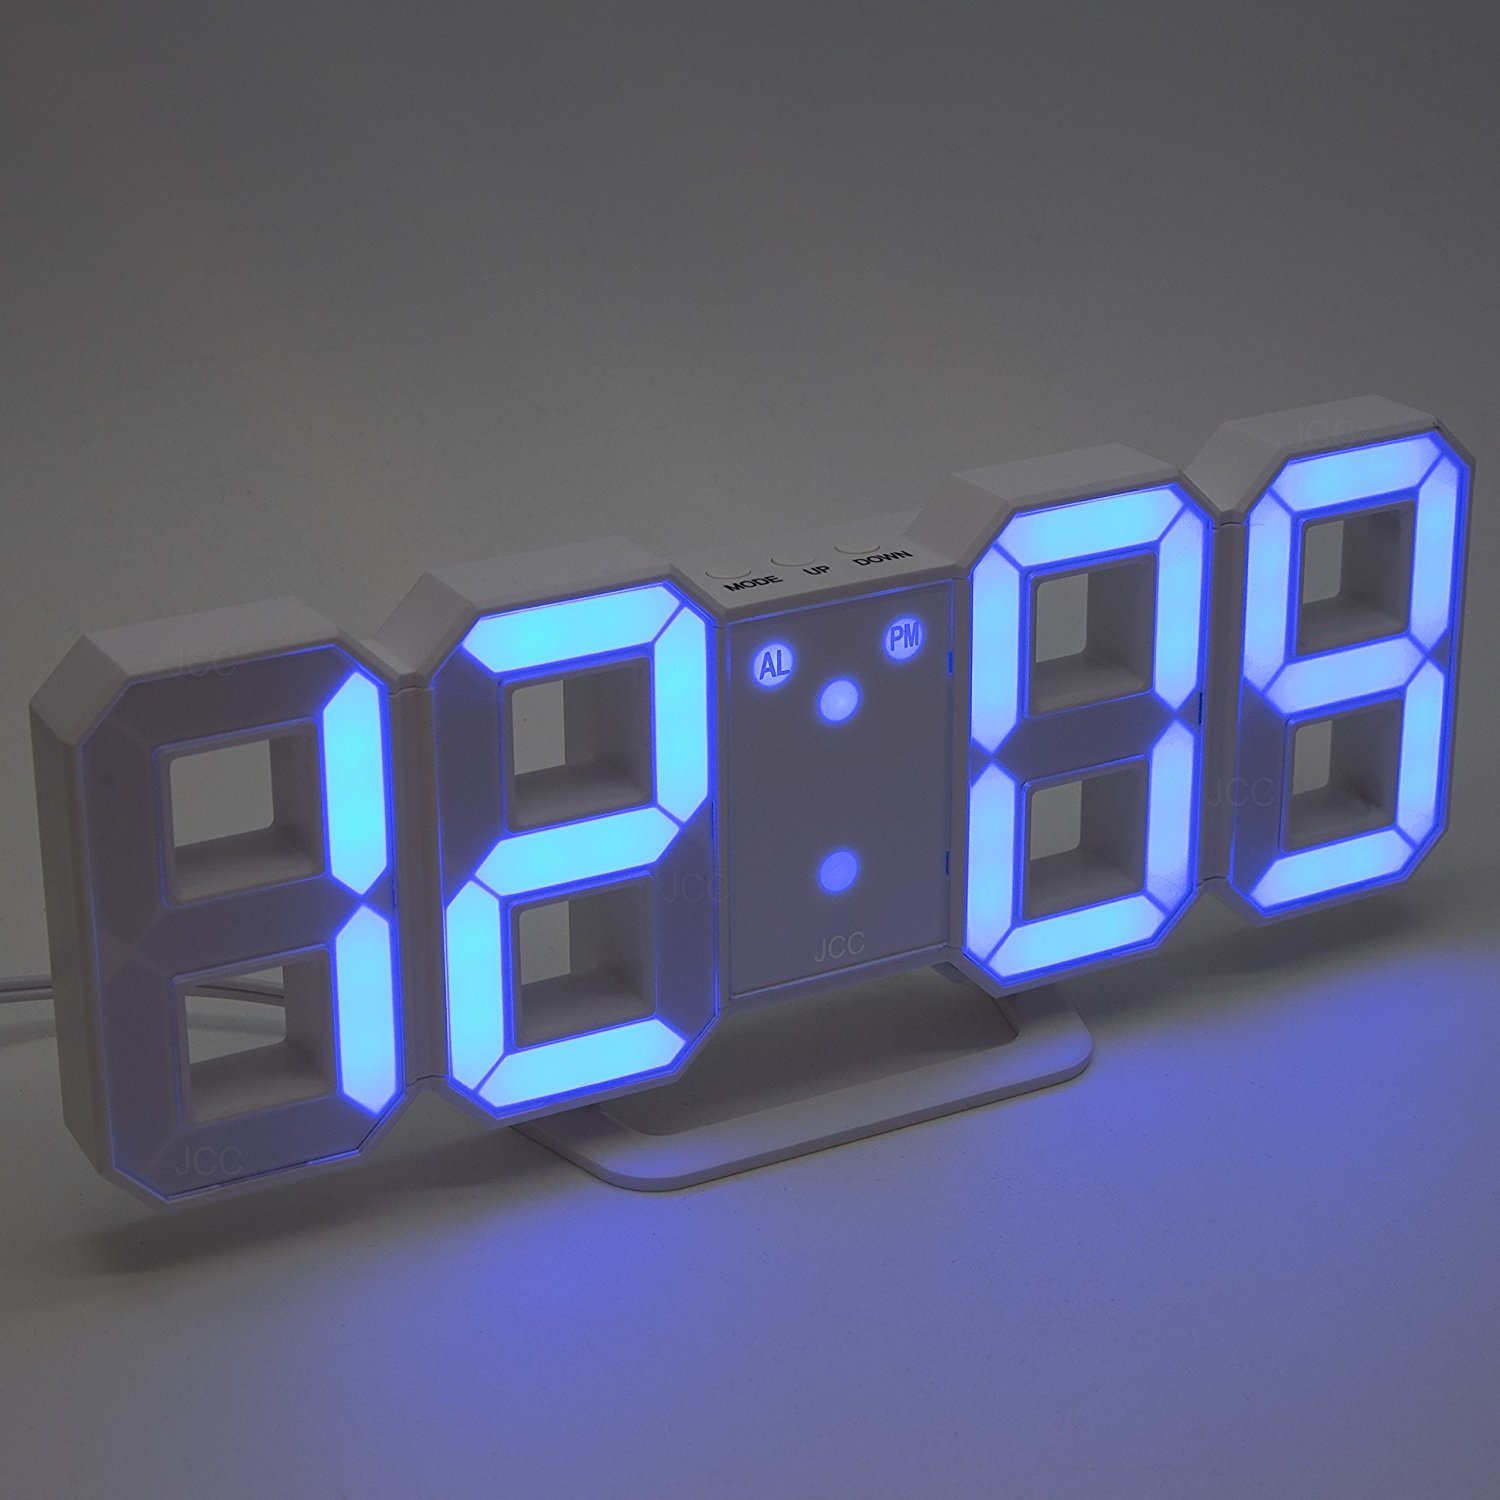 Настольные часы будильник с подсветкой. Настенные led часы 3d-jh3103. Часы настенные Digital led Clock. Светодиодные часы TS-s60. Электронные часы led Digital Wall Clock.